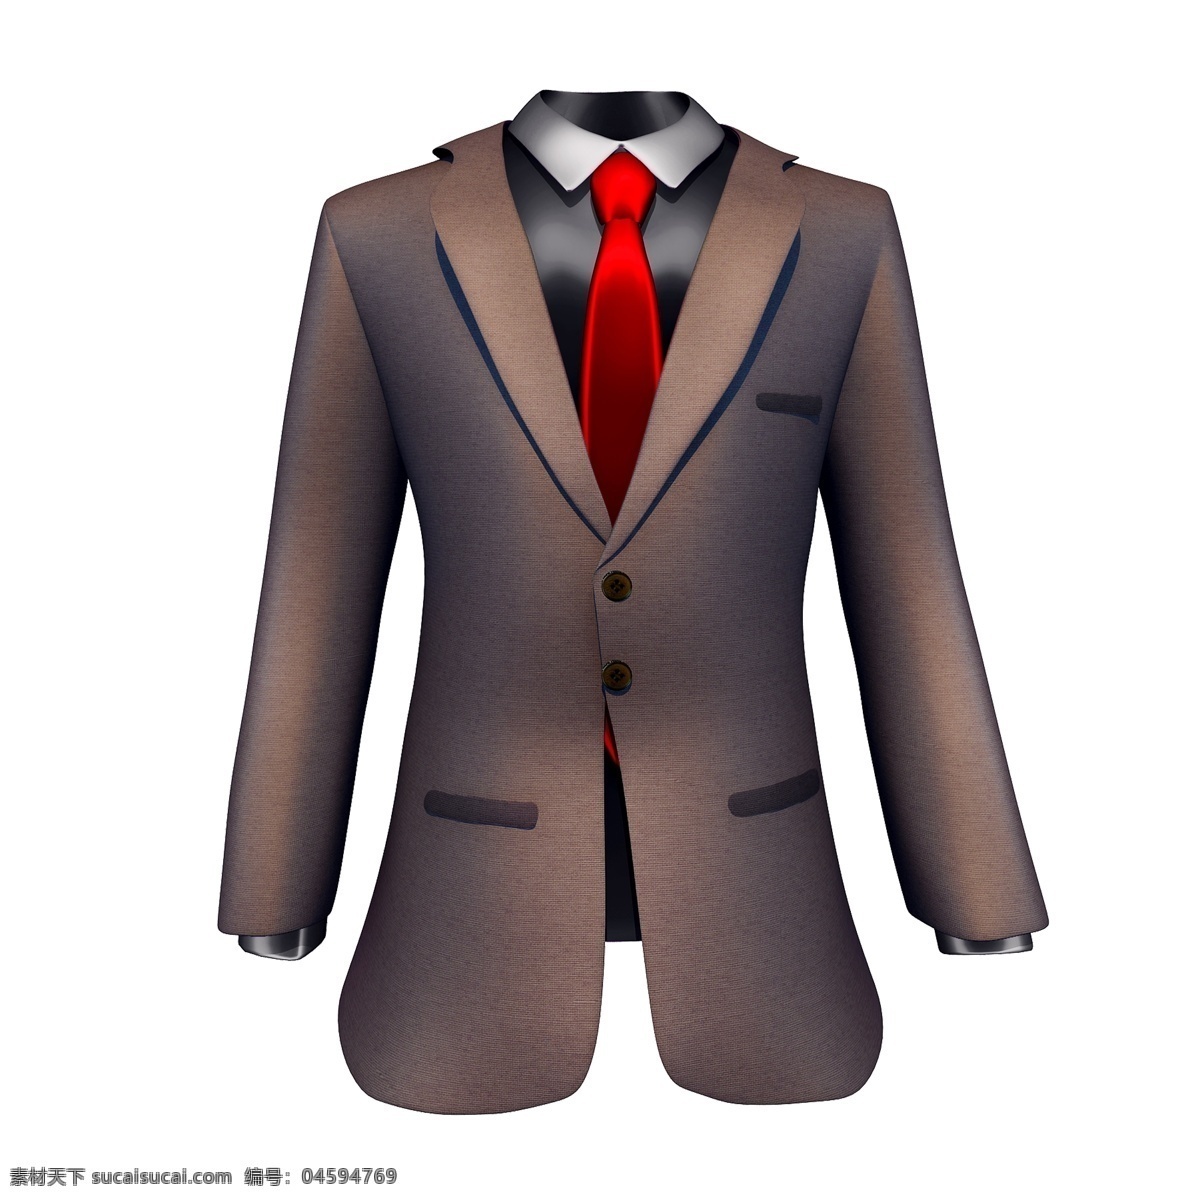 质感 西装 领带 图 精致 父亲节 新衣服 礼物 立体 仿真 3d 创意 套图 png图